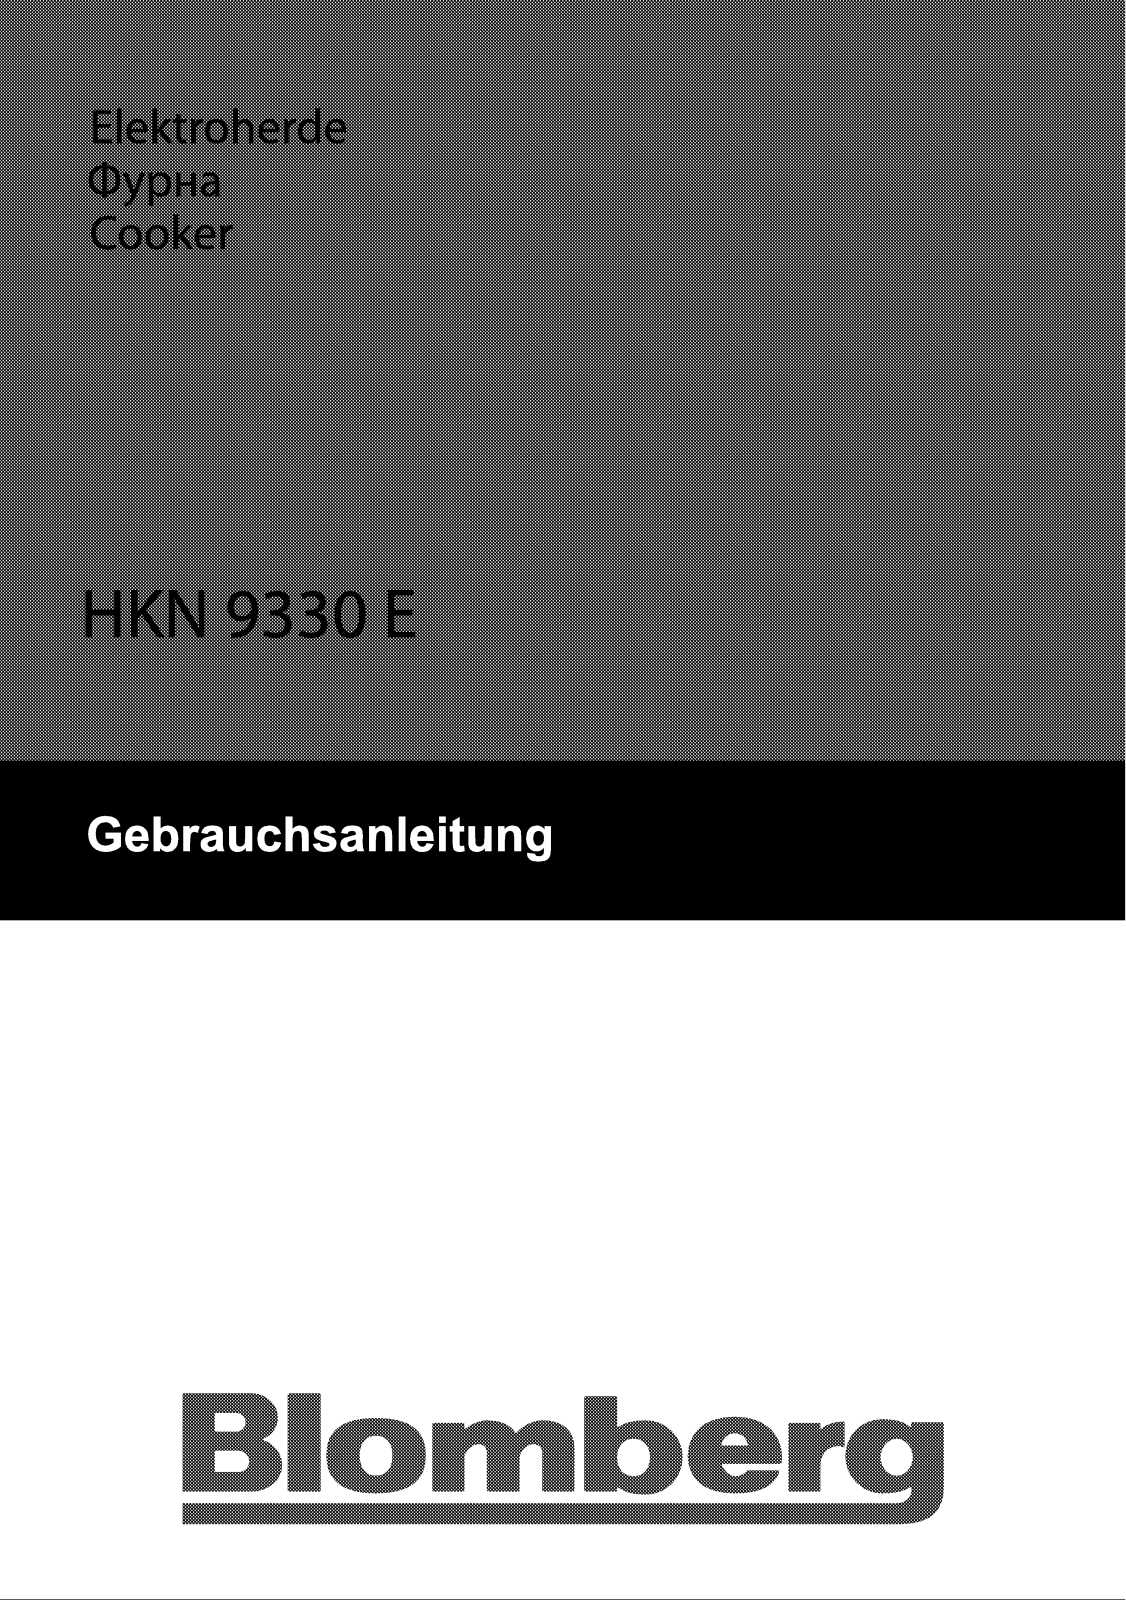 Blomberg HKN 9330 E User Manual